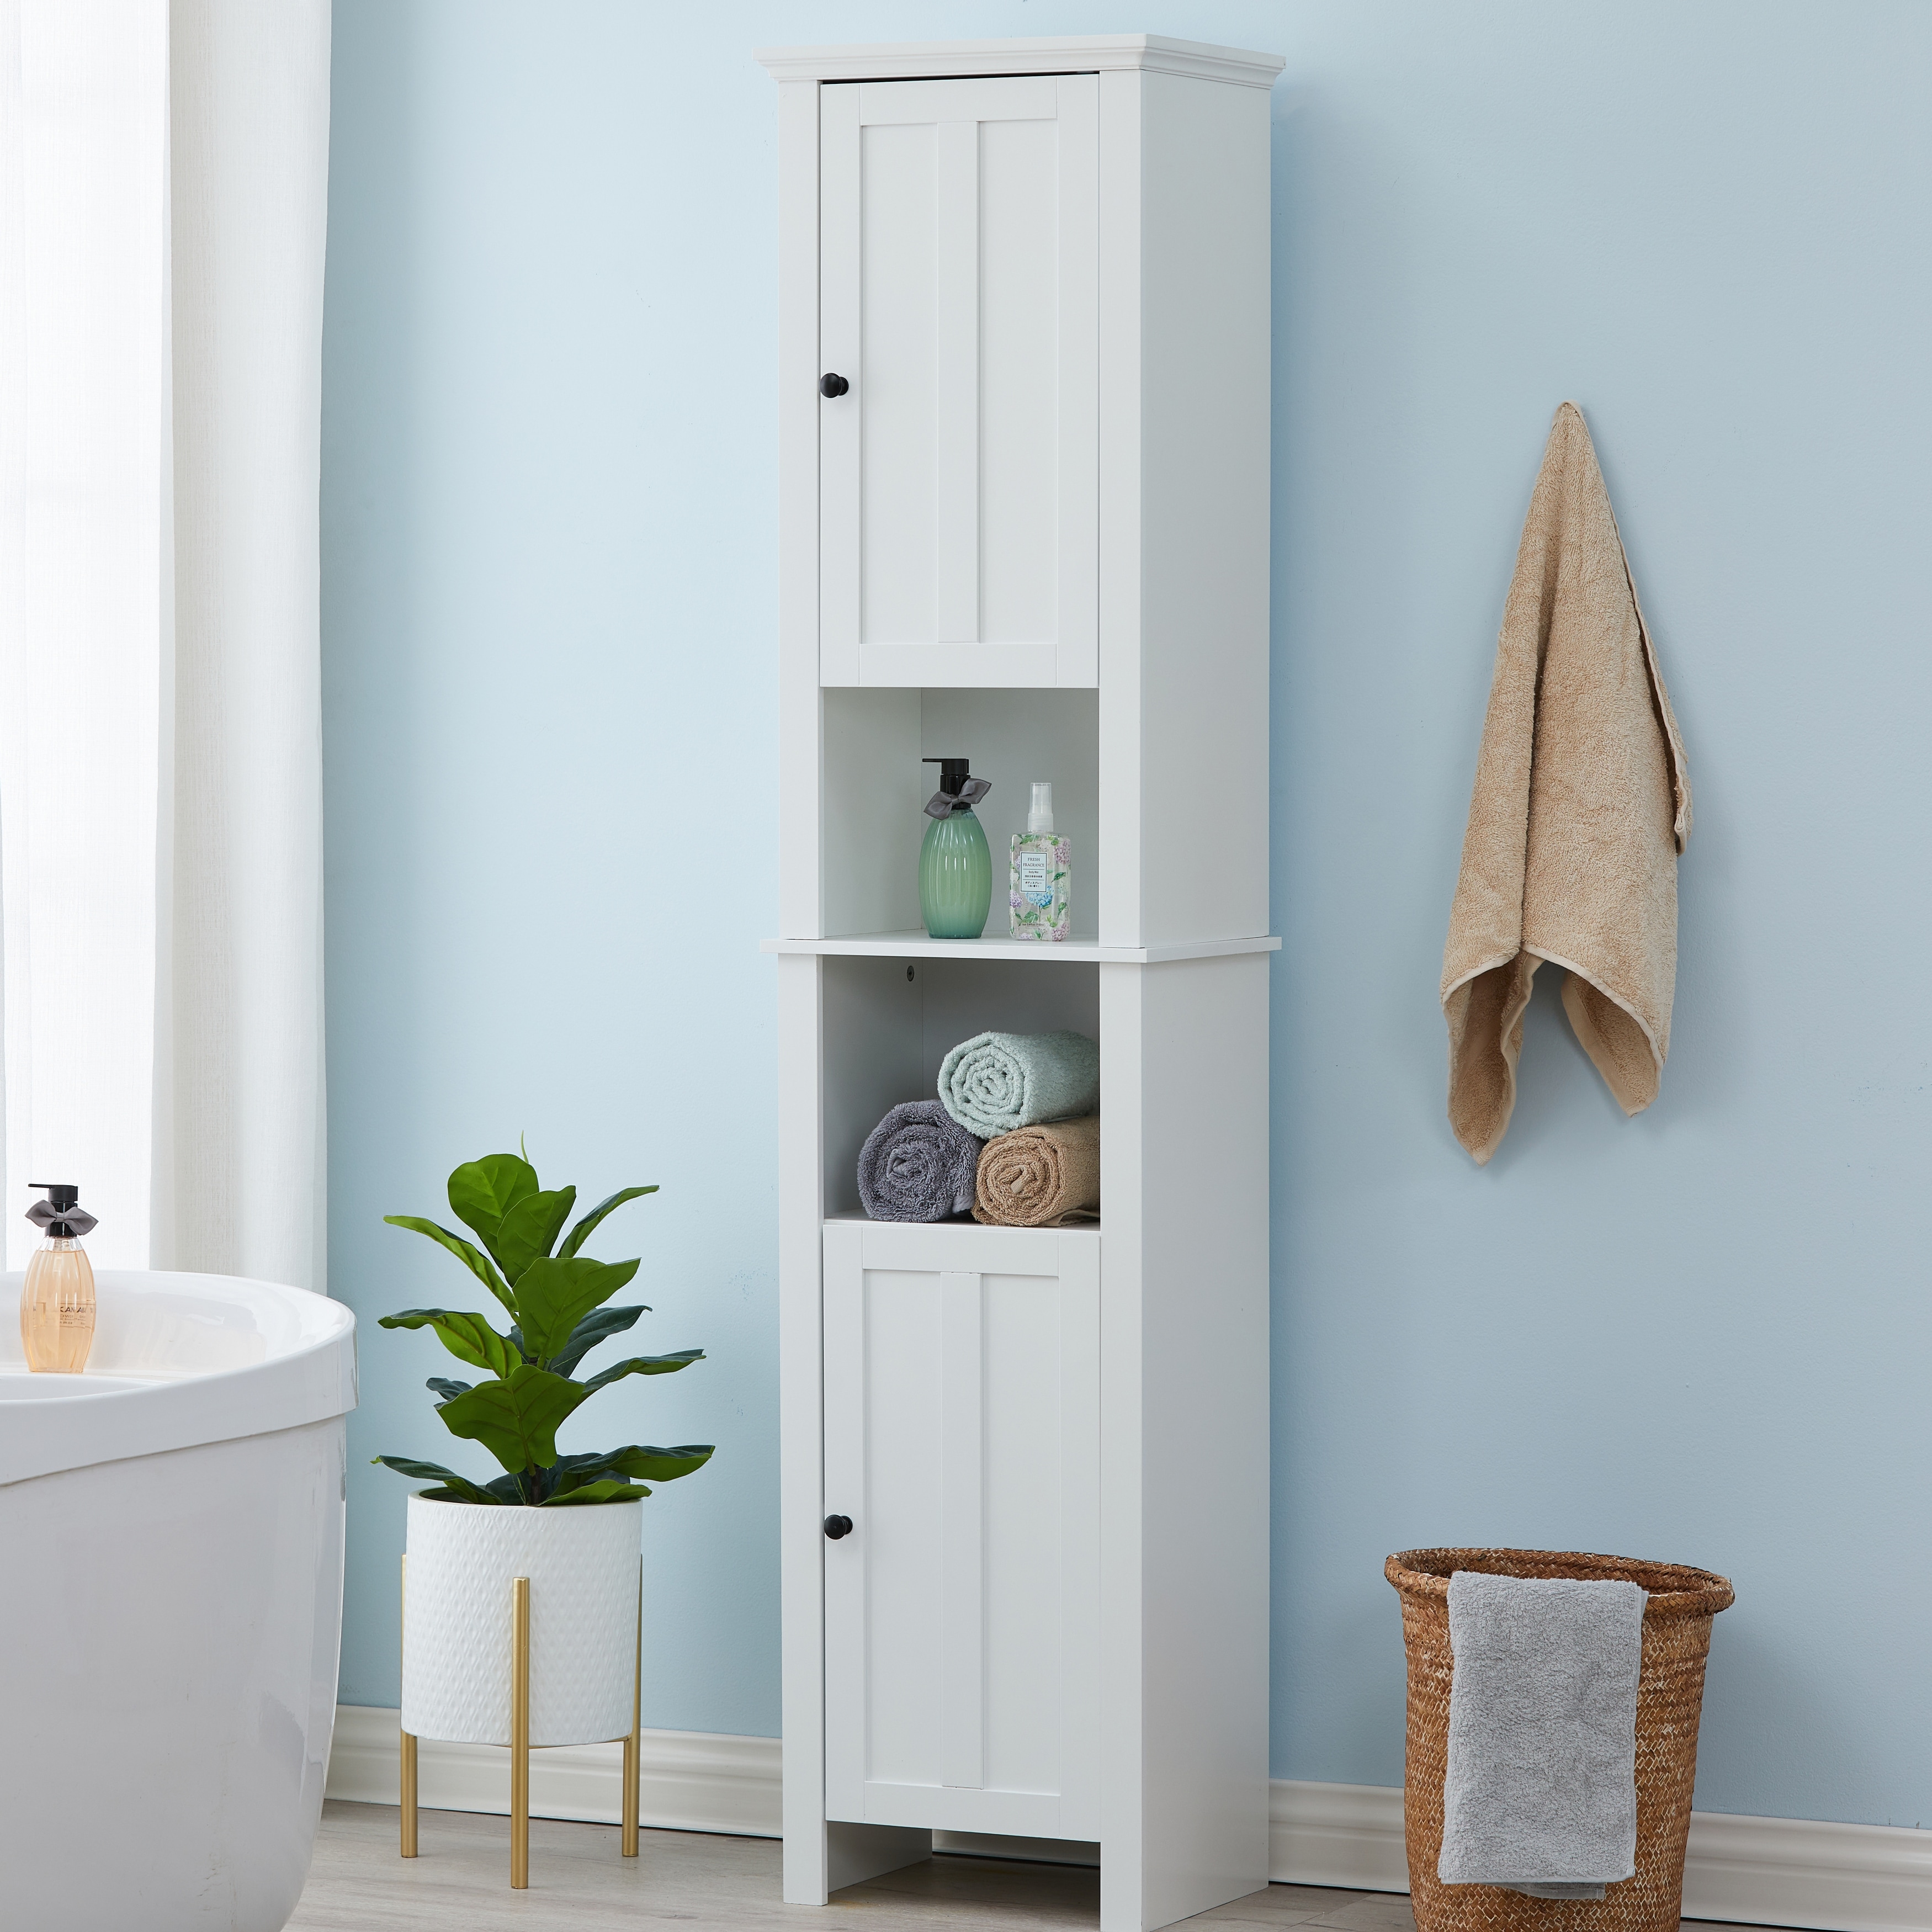 Floor Cabinet Storage Linen Towels White Shelf MDF Bathroom Organizer Home New